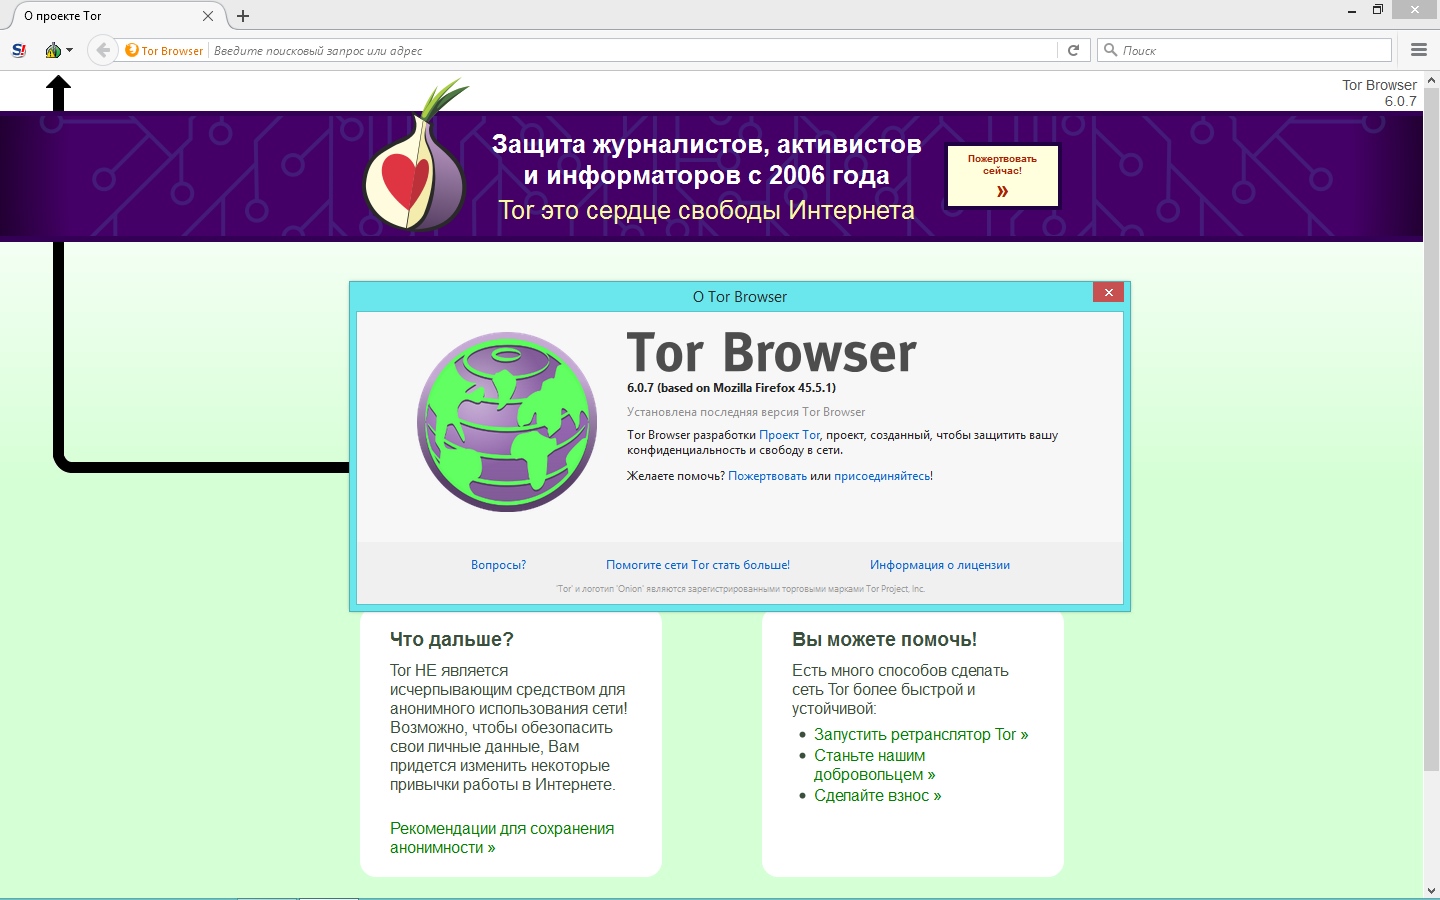 Скачать тор браузер бесплатно на русском языке для windows 7 через торрент mega free download tor browser android mega